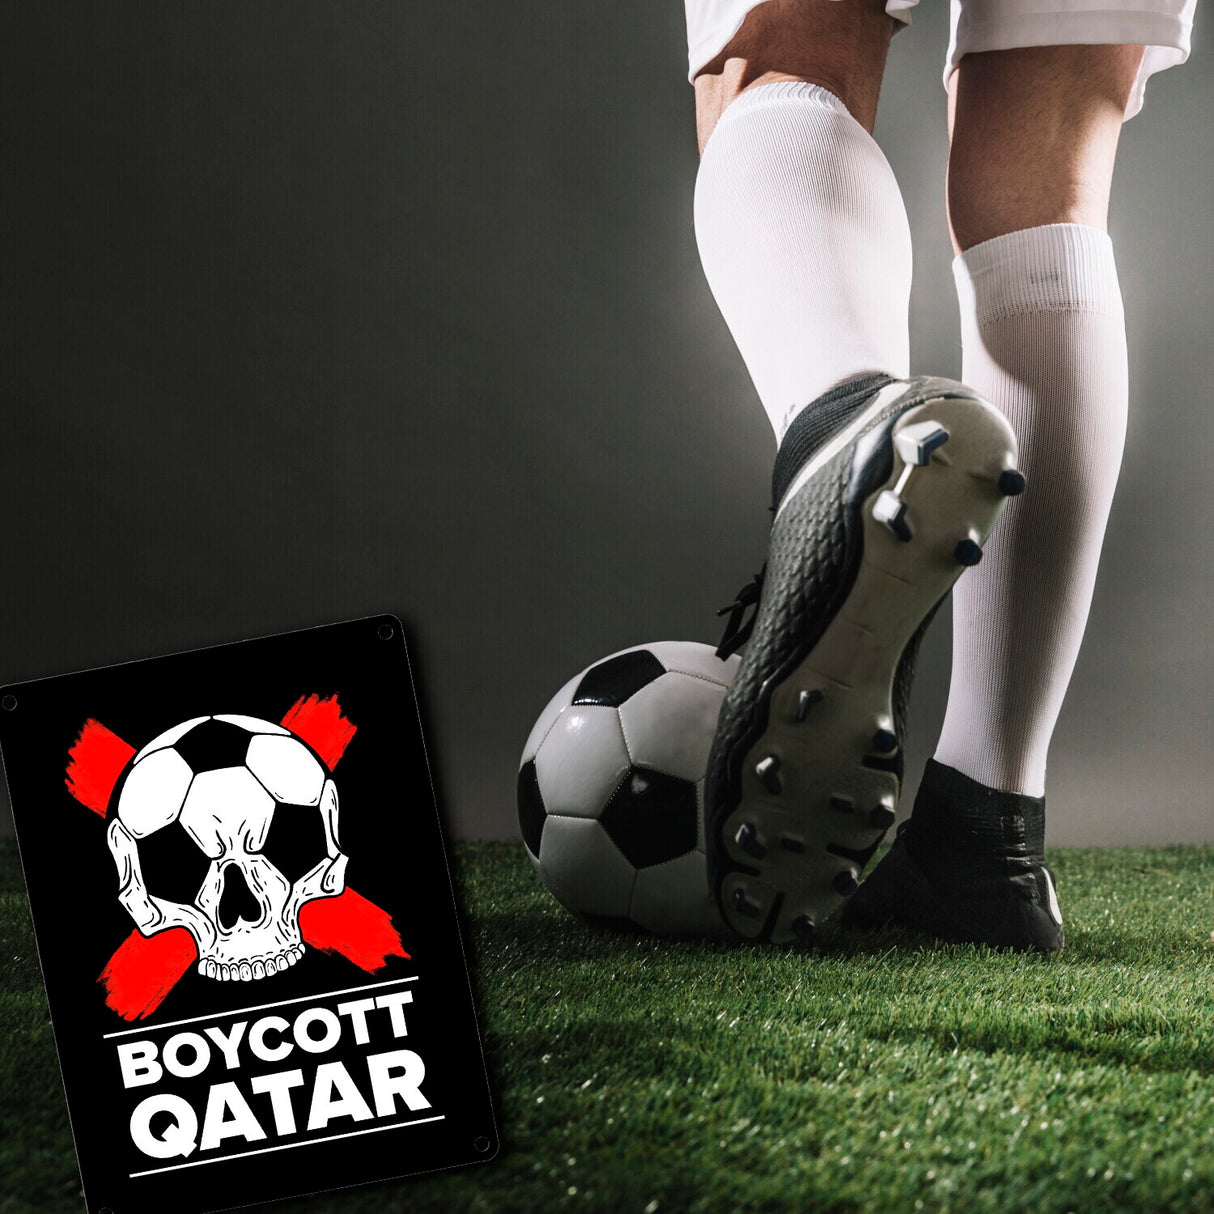 Boycott Qatar Metallschild mit Fußball-Totenkopf